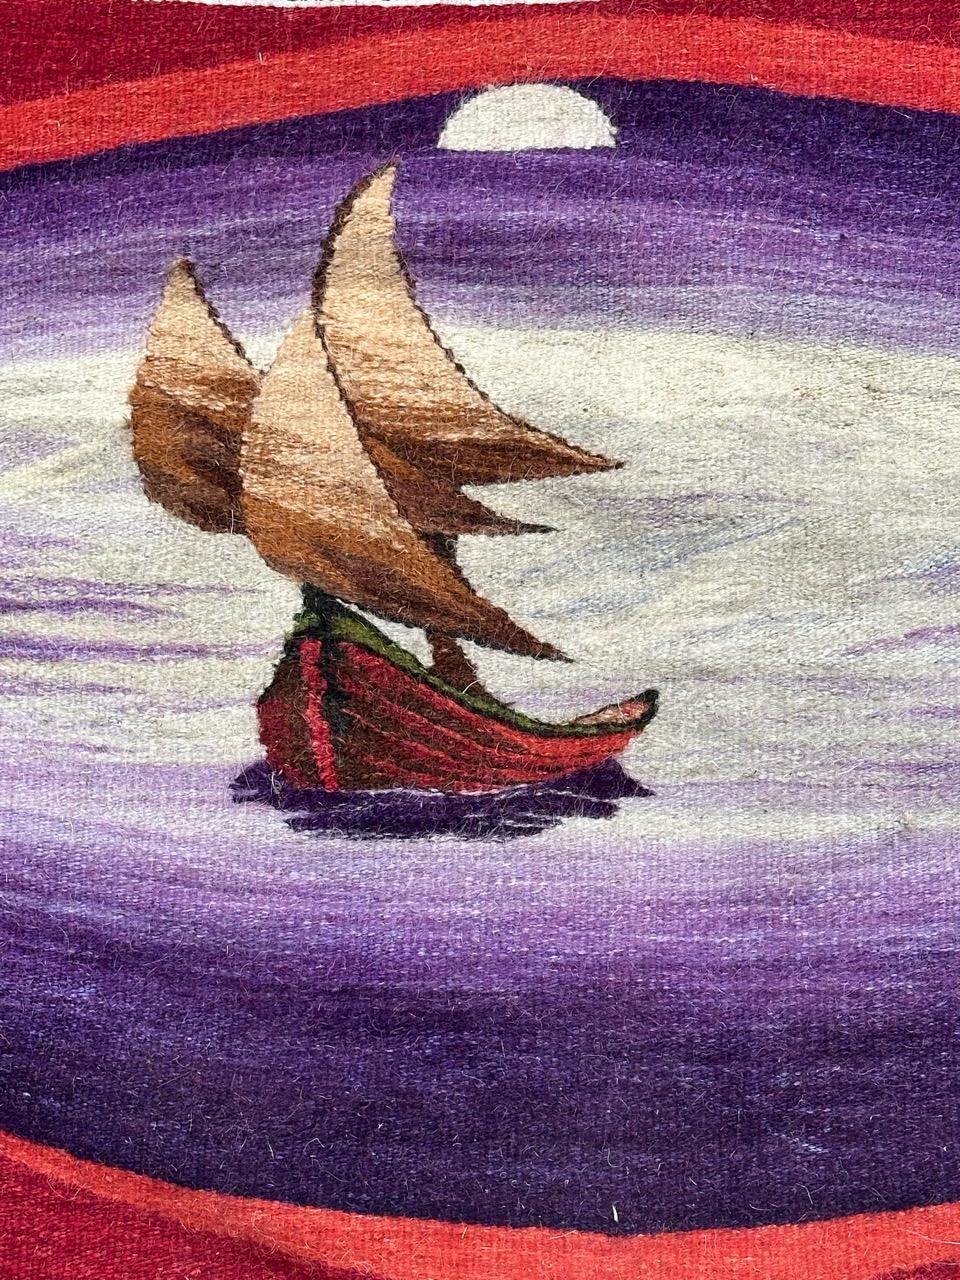 Sehr schöner, kleiner, moderner Wandteppich, wahrscheinlich europäisch (unbekannter Künstler), mit einem schönen Muster, das ein Boot im Meer zeigt, darüber der Mond,  mit schönen Farben, mit Violett, Braun, Beige, Rot und Weiß, ganz und gar und